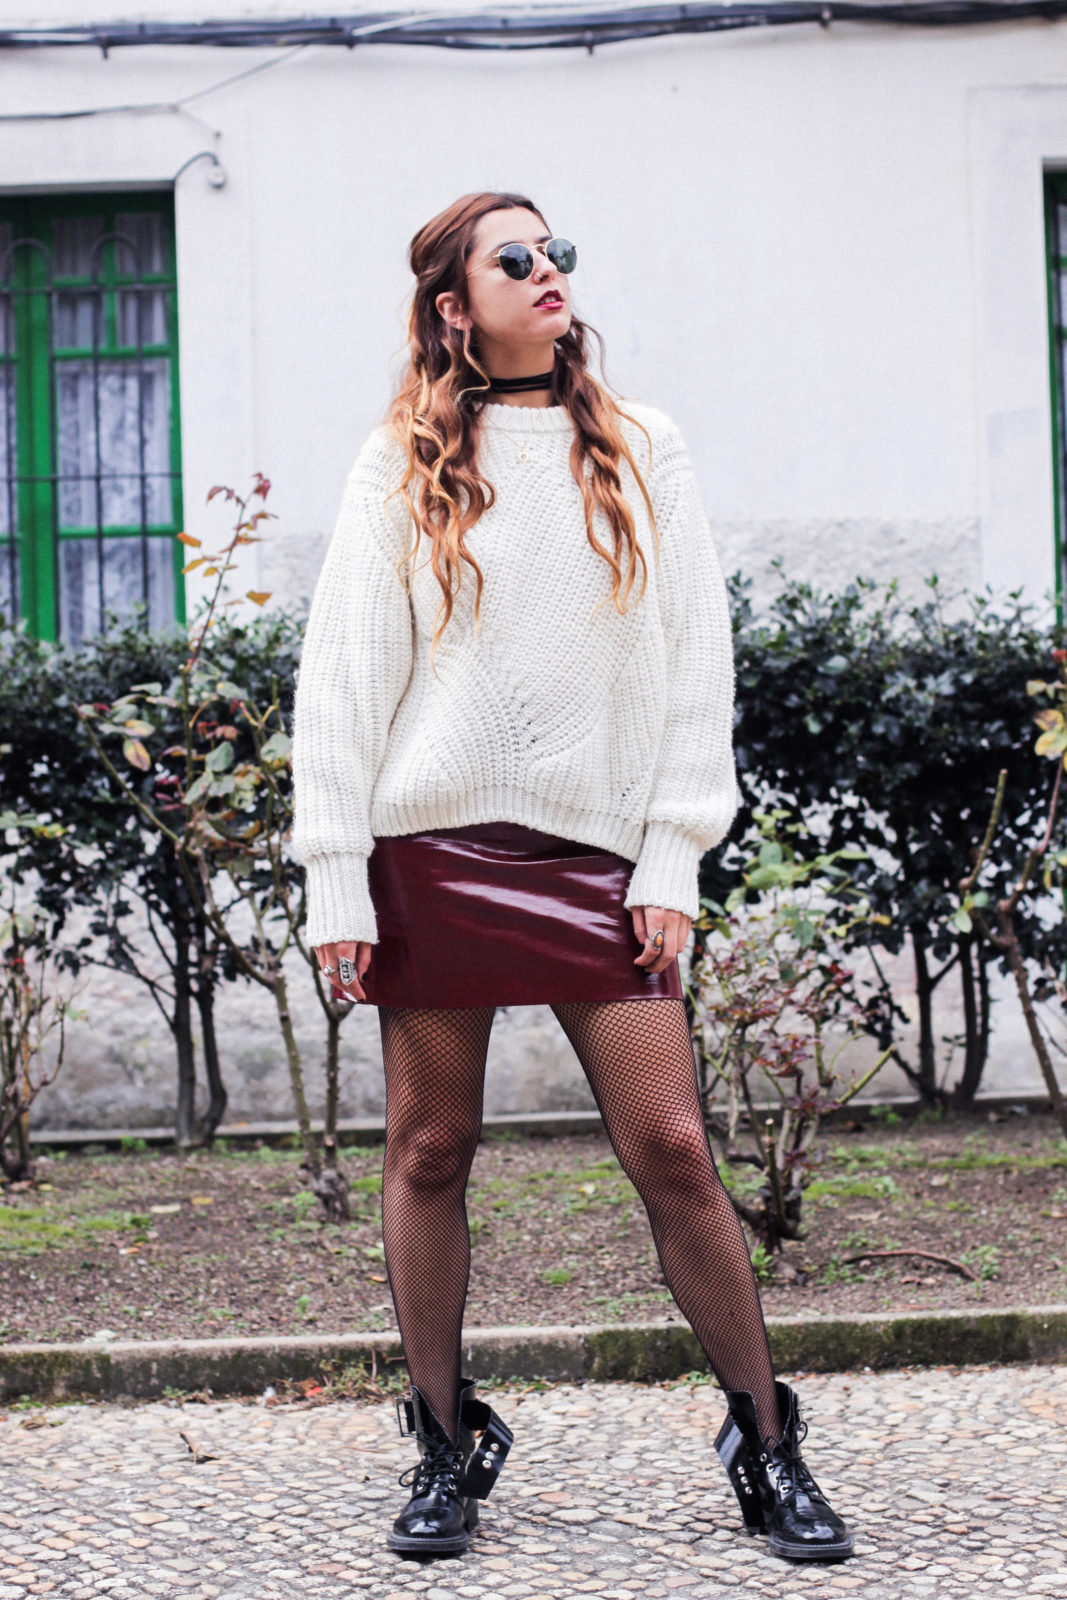 irresistible_me_medias_de_rejilla_falda_de_charol_jersey_sweater_knitwear_hair_style_dark_lips-37